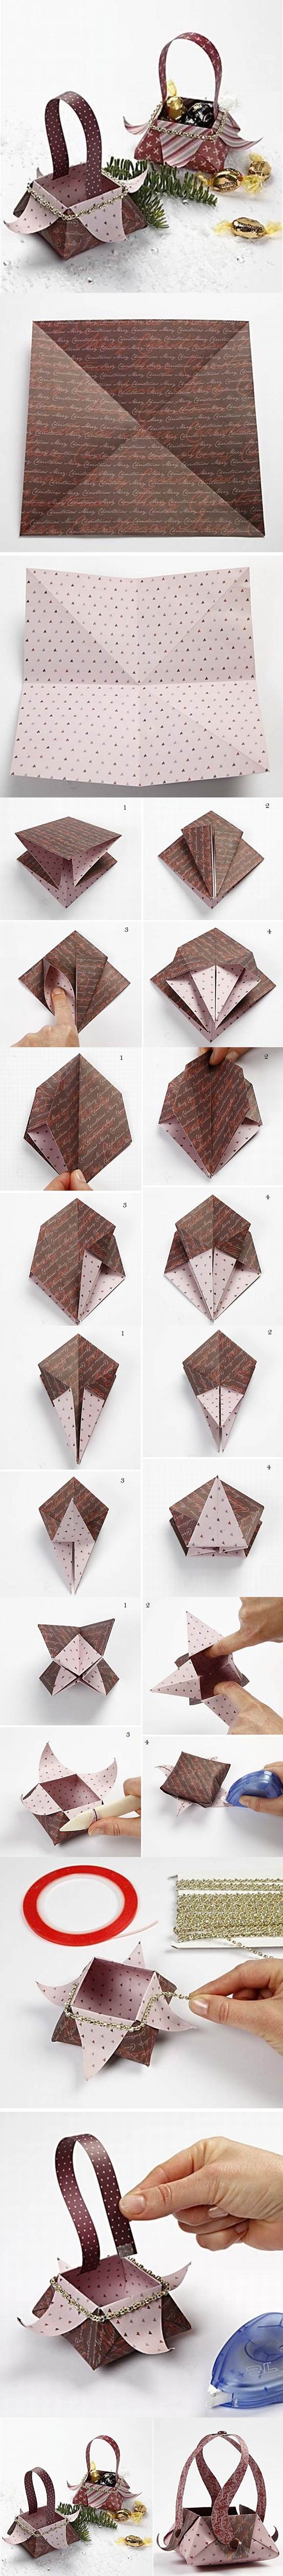 DIY Beautiful Origami Gift Basket 2